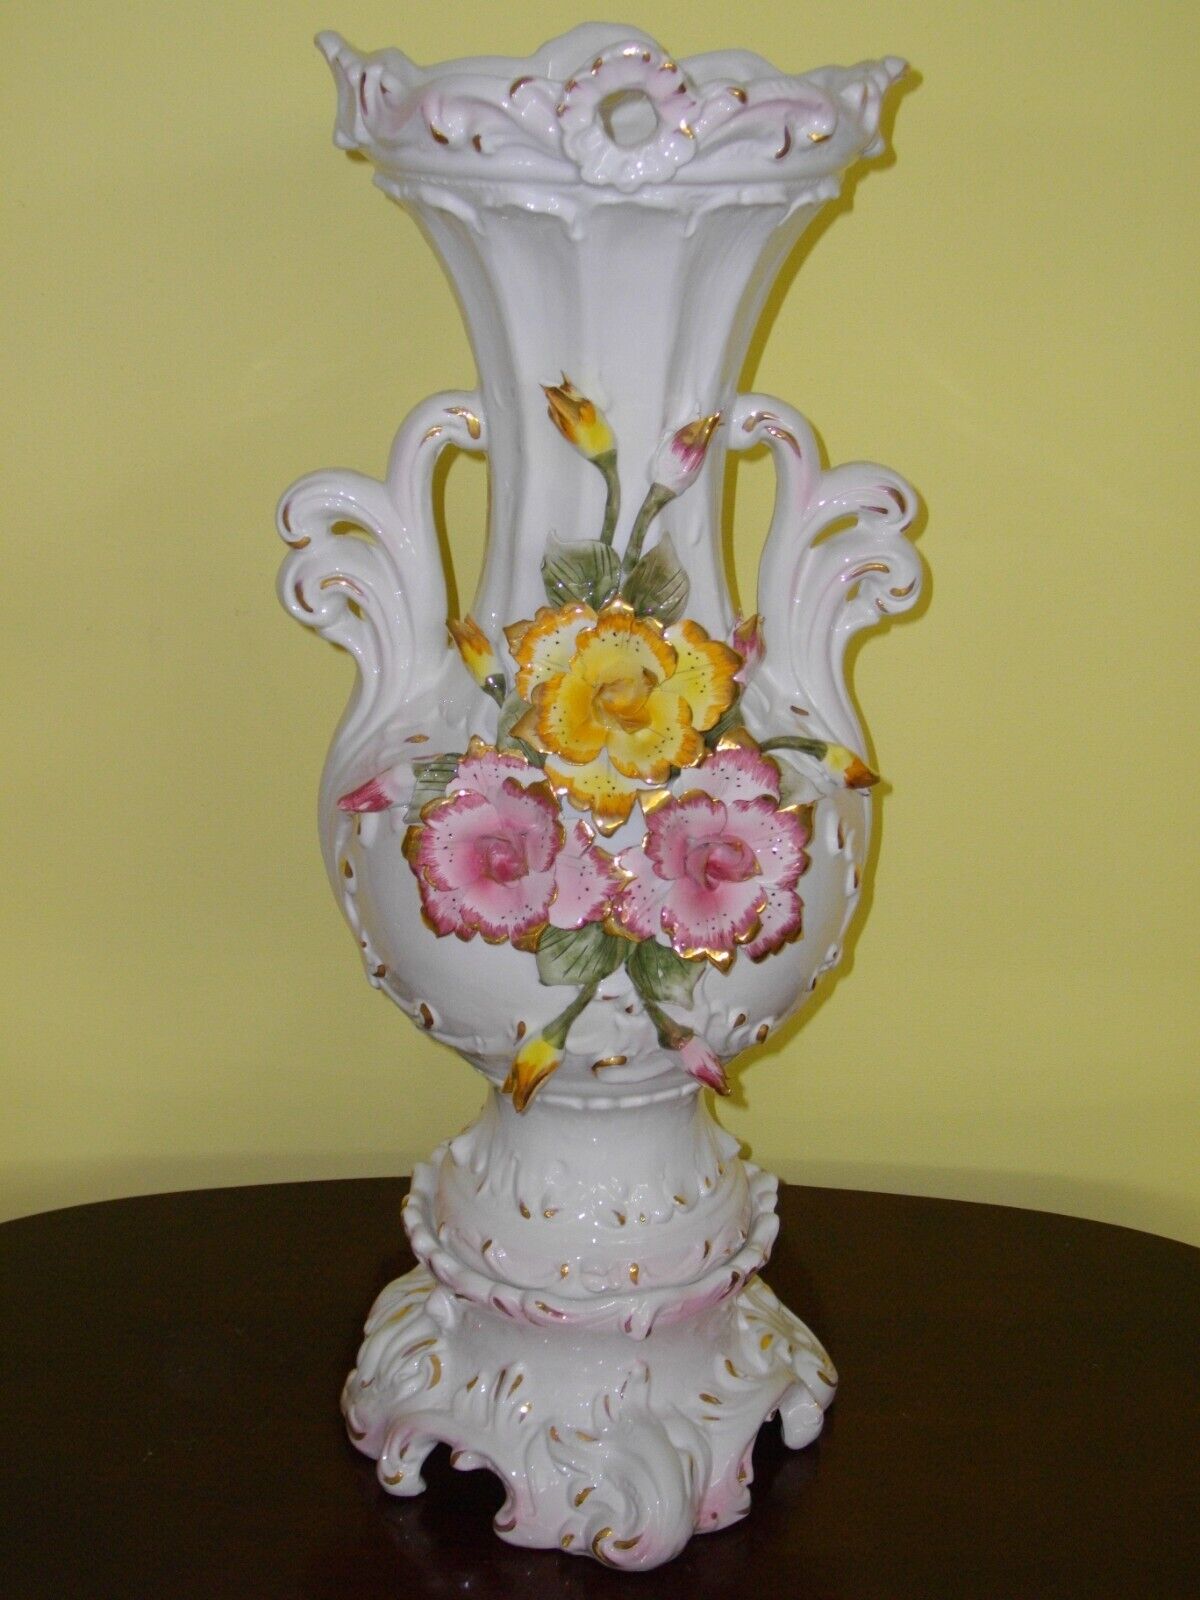 Capodimonte Big Flower Vases with 24k Gold